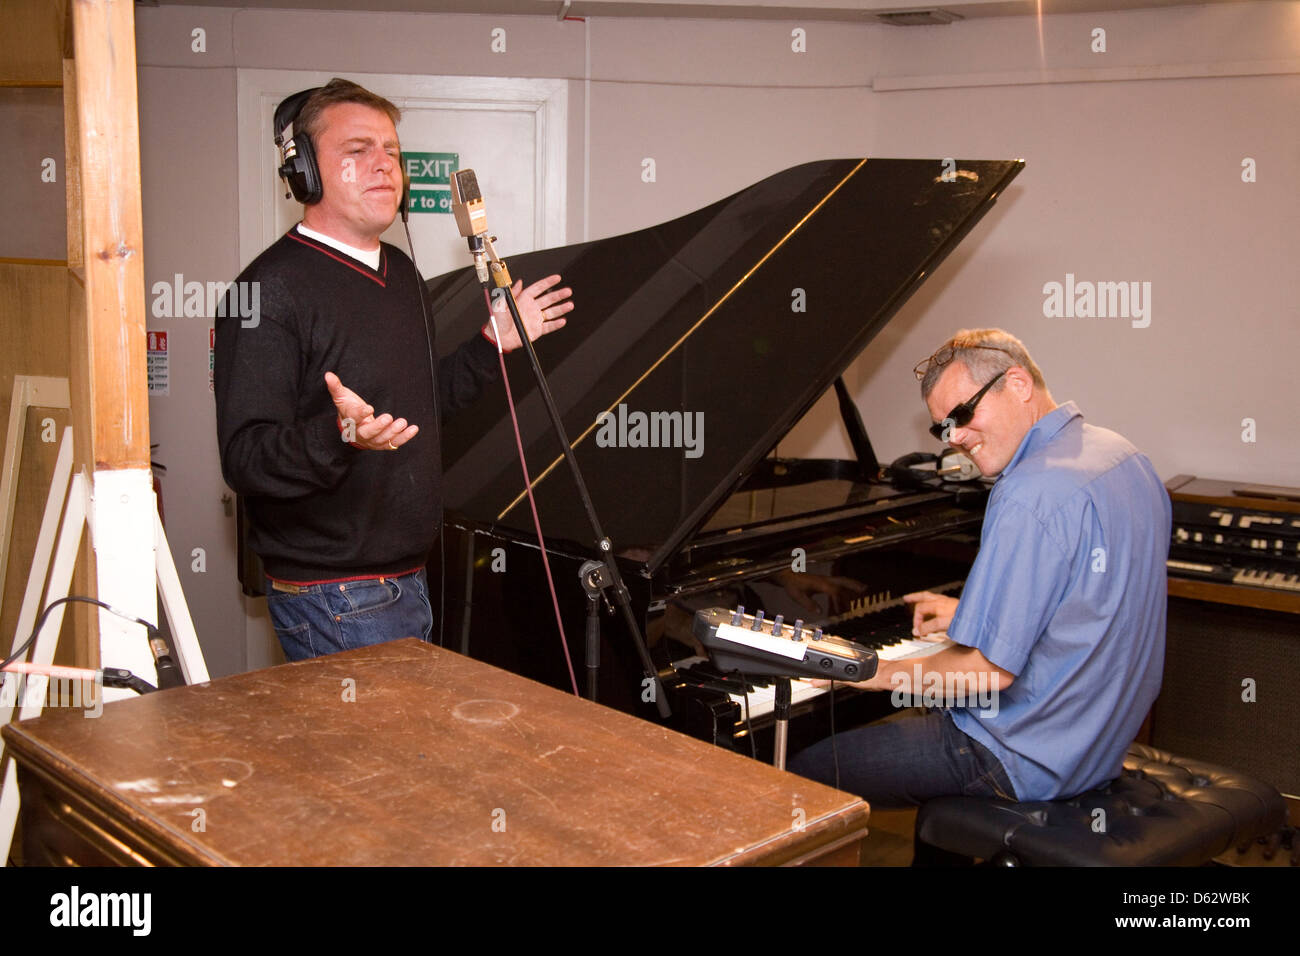 Suggs et Mike Maintiensur à partir de la folie à l'Alizée studios Londres Angleterre. Banque D'Images